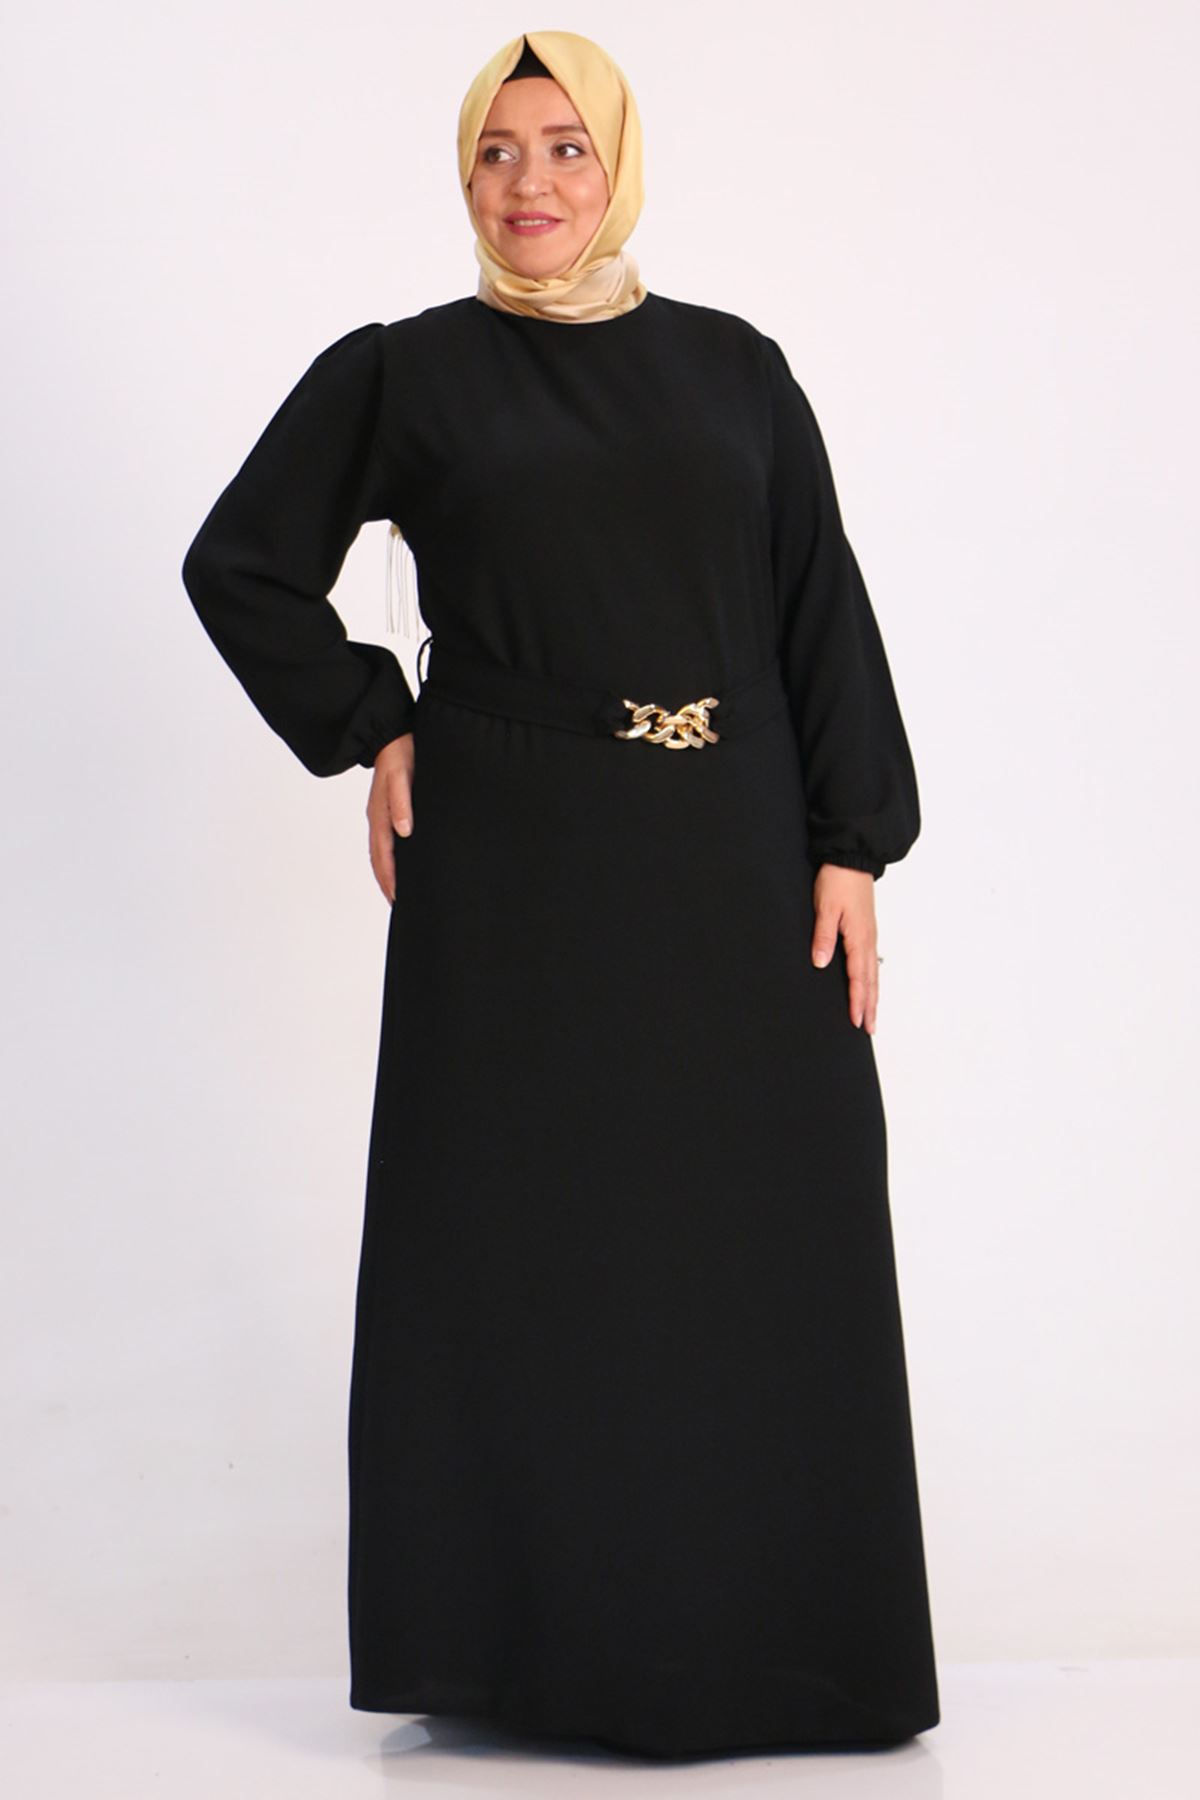  32018 Plus Size Double Layer Crepe Dress With Detachable Belt - Black